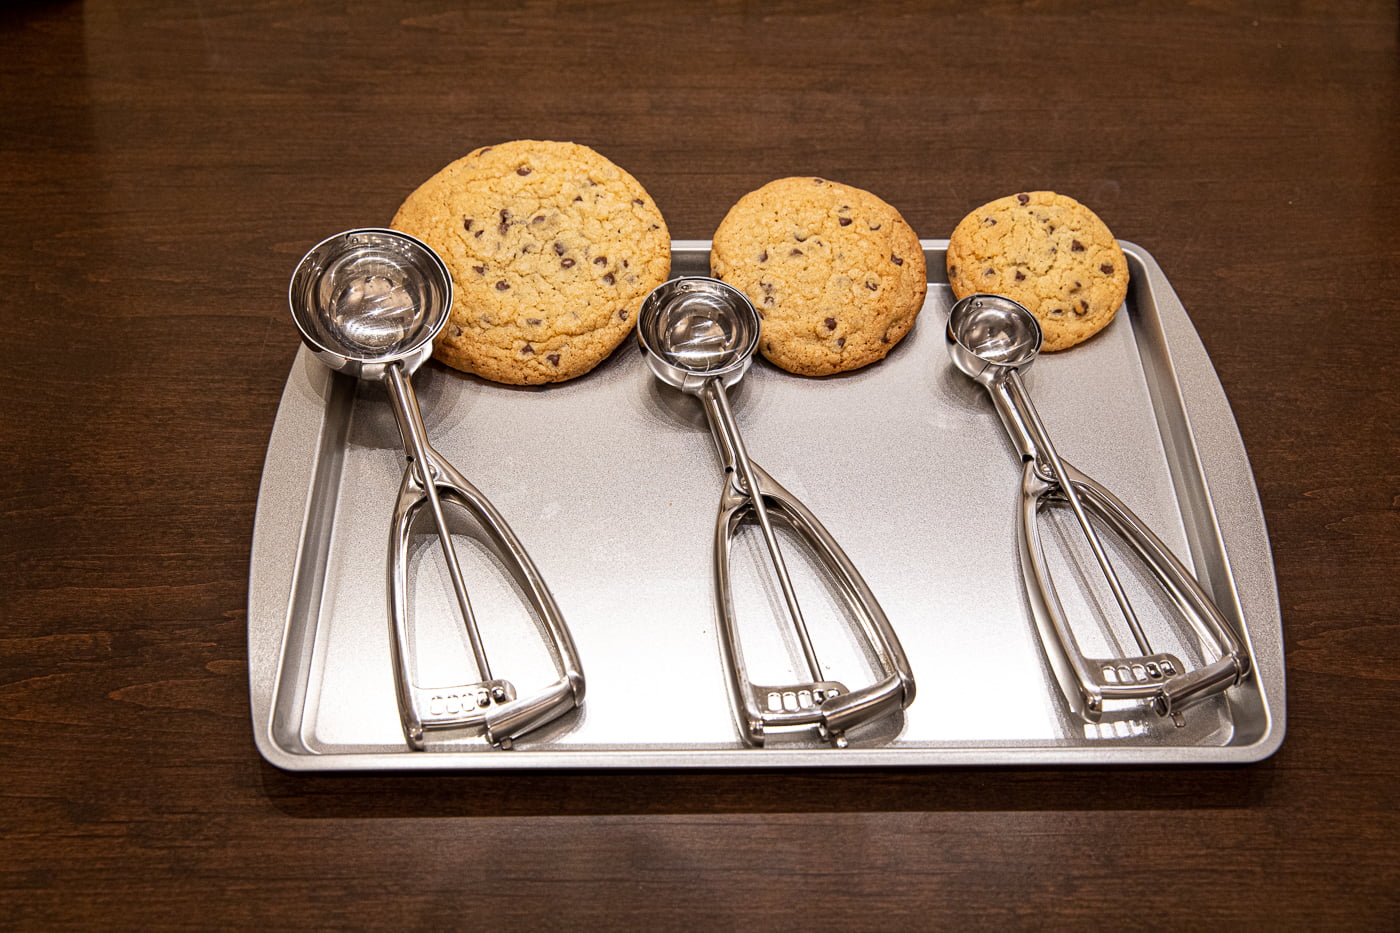 Jenaluca Cookie Scoop Set - Cookie Scoops for Baking